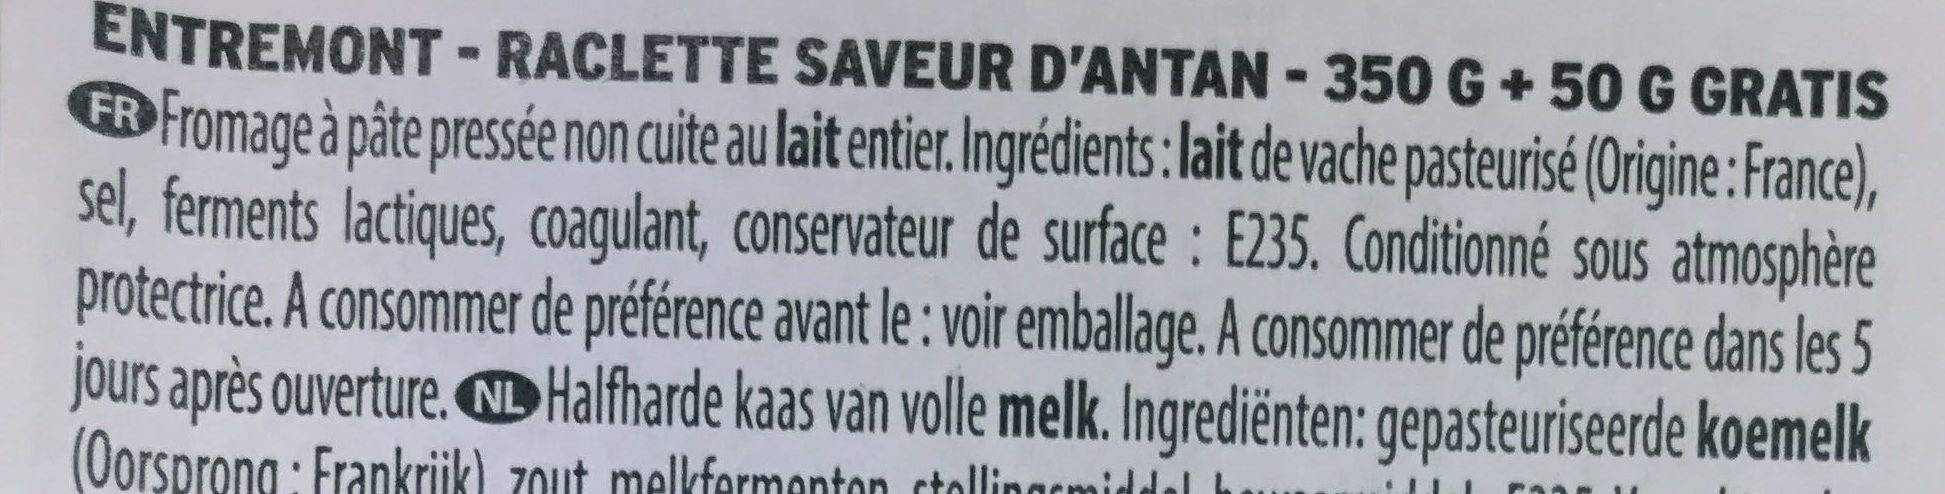 Raclette Saveur d'Antan (+50g gratis) - Ingredients - fr